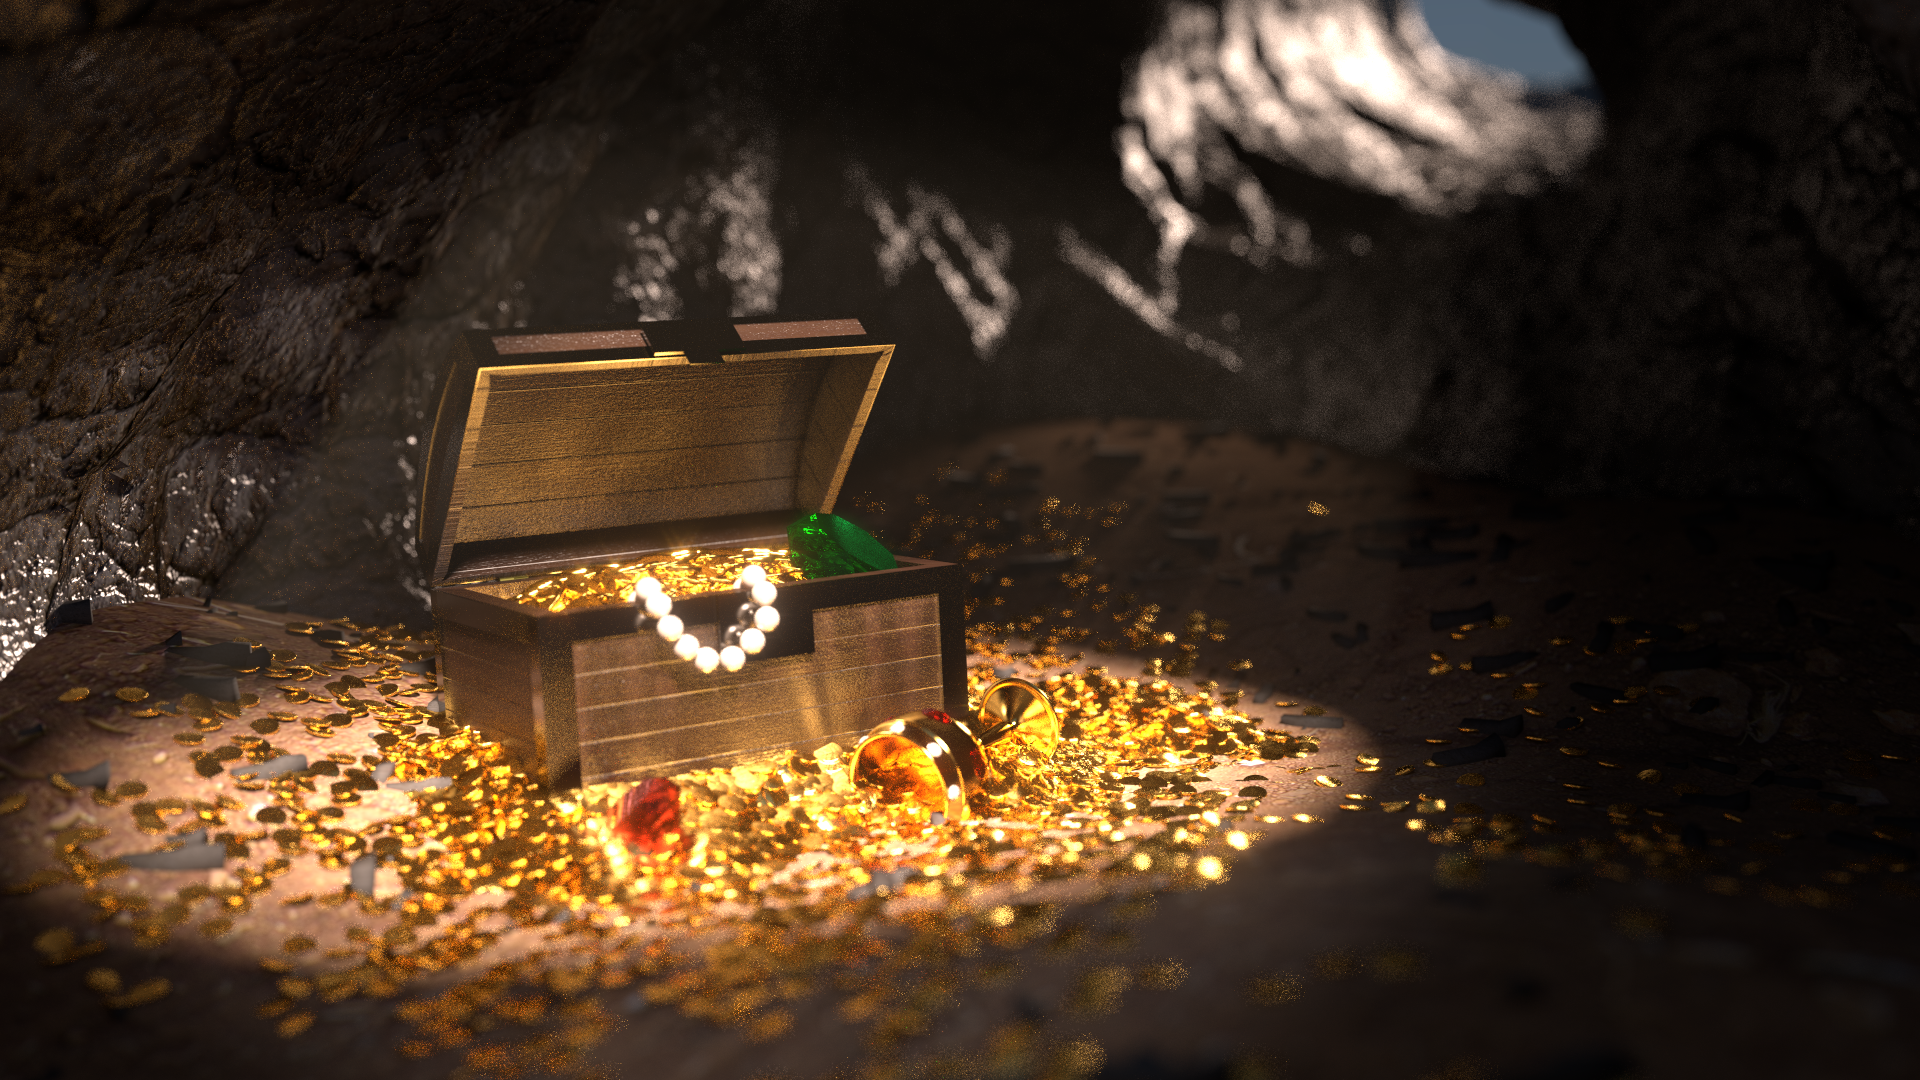 A Pirates Treasure Box - Treasure In A Cave , HD Wallpaper & Backgrounds